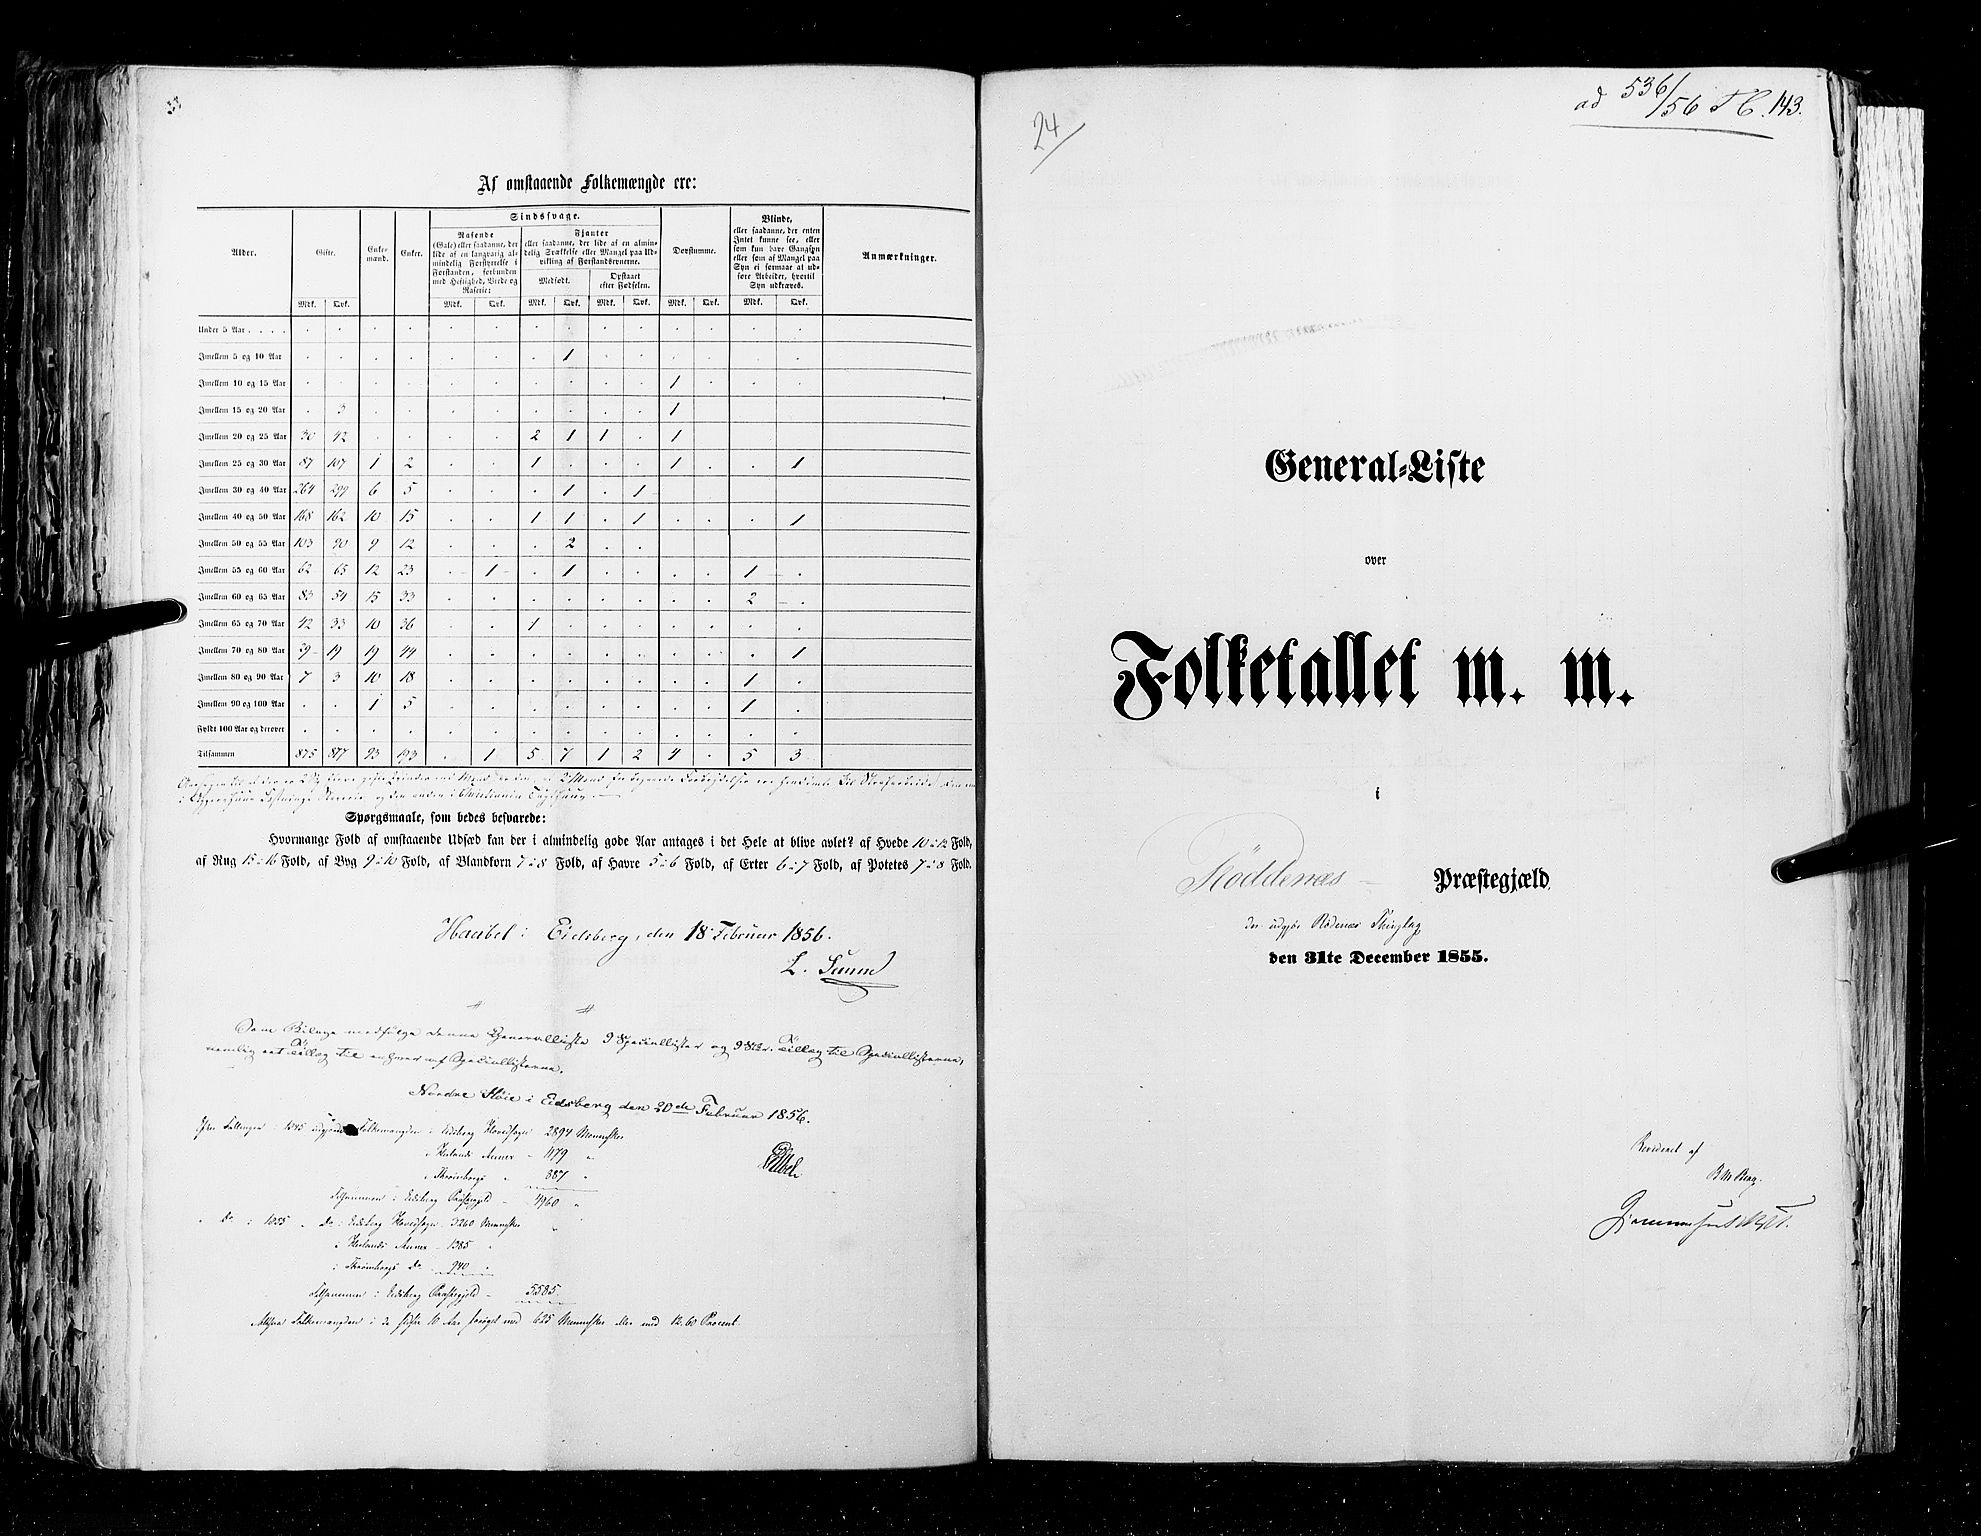 RA, Folketellingen 1855, bind 1: Akershus amt, Smålenenes amt og Hedemarken amt, 1855, s. 143